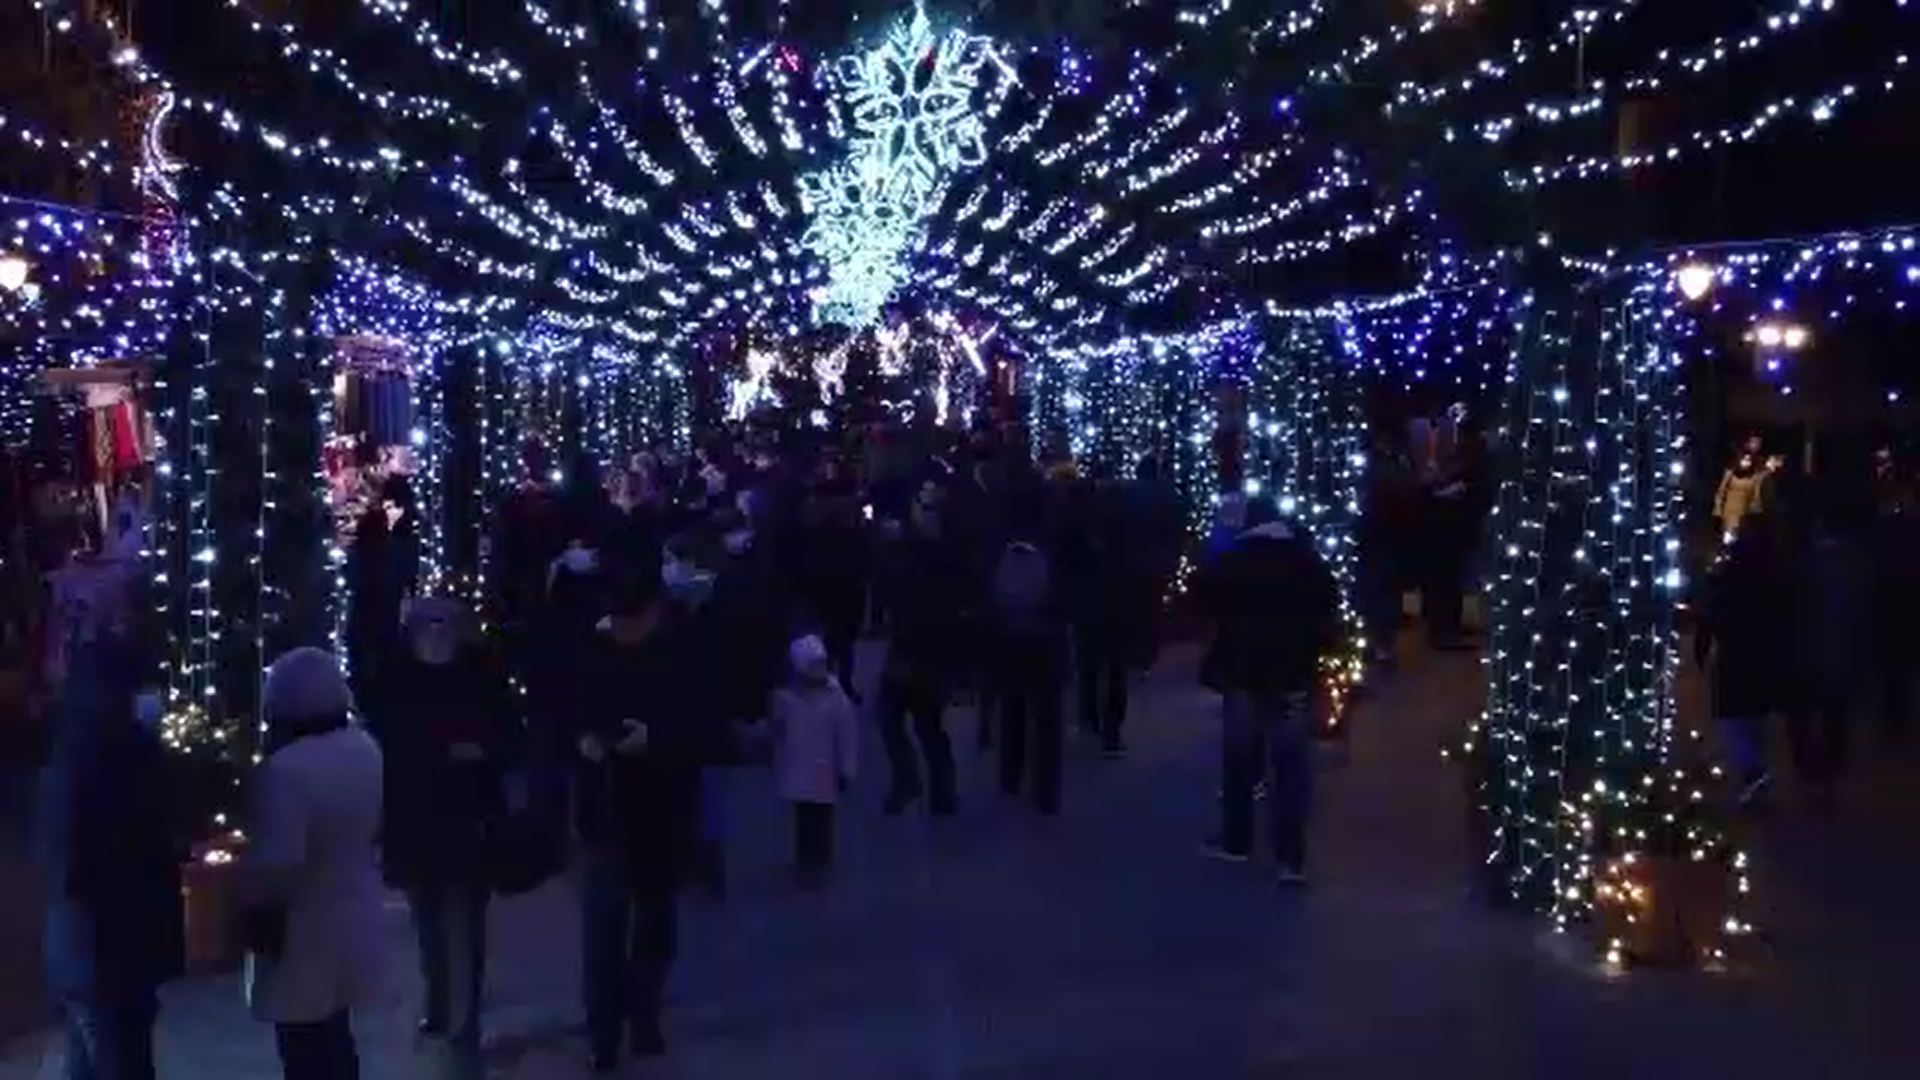 S-au aprins luminițele festive în mai multe orașe. Sute de oameni s-au bucurat de atmosfera festivă